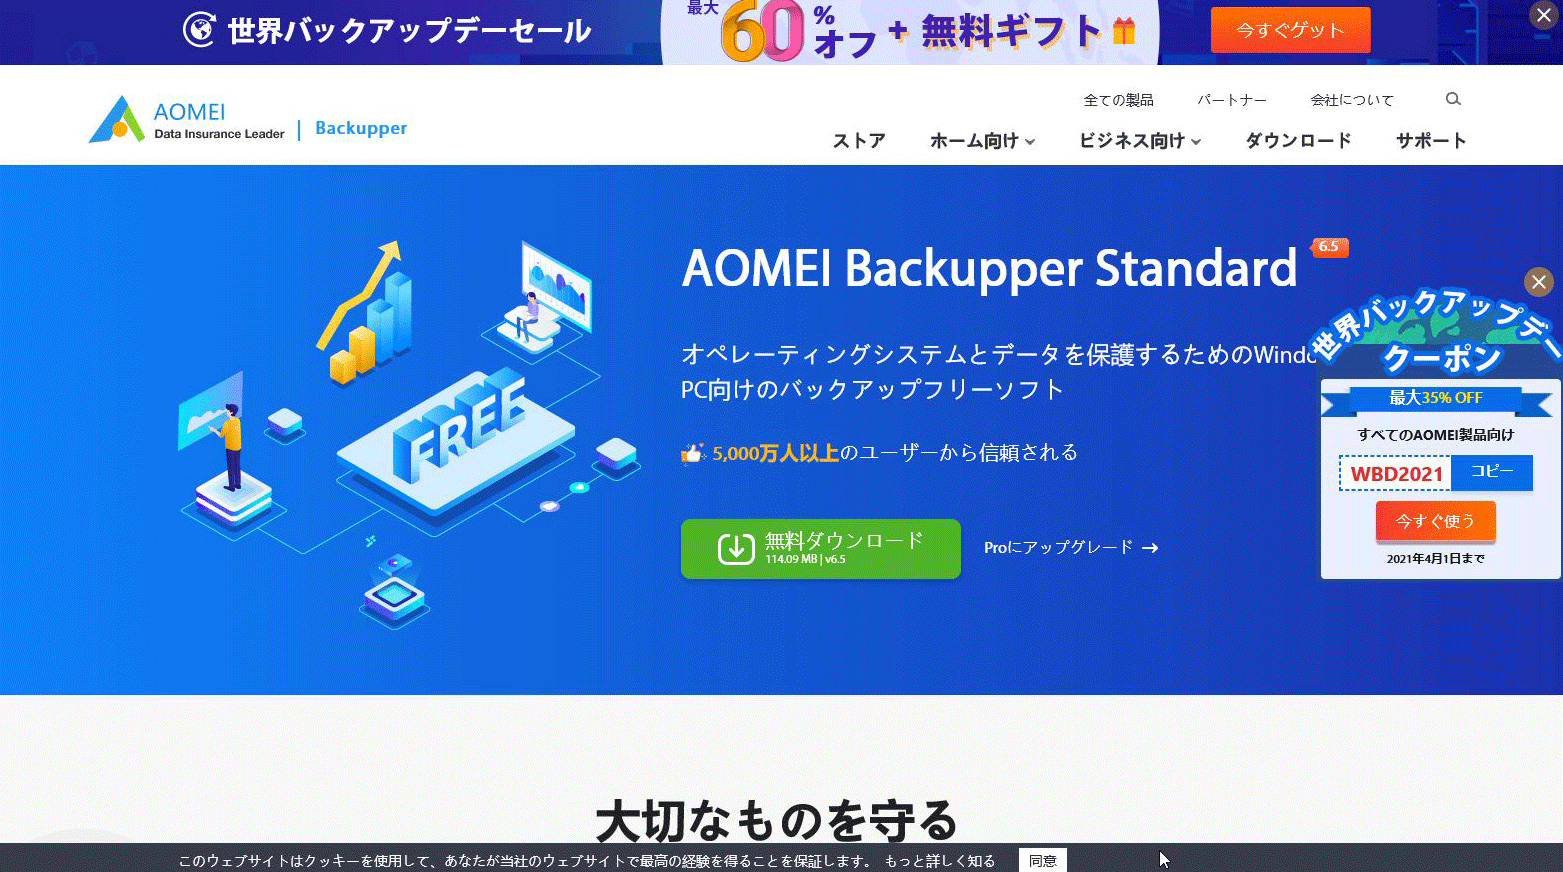 AOMEI Backupper （ディスクのクーロン化）